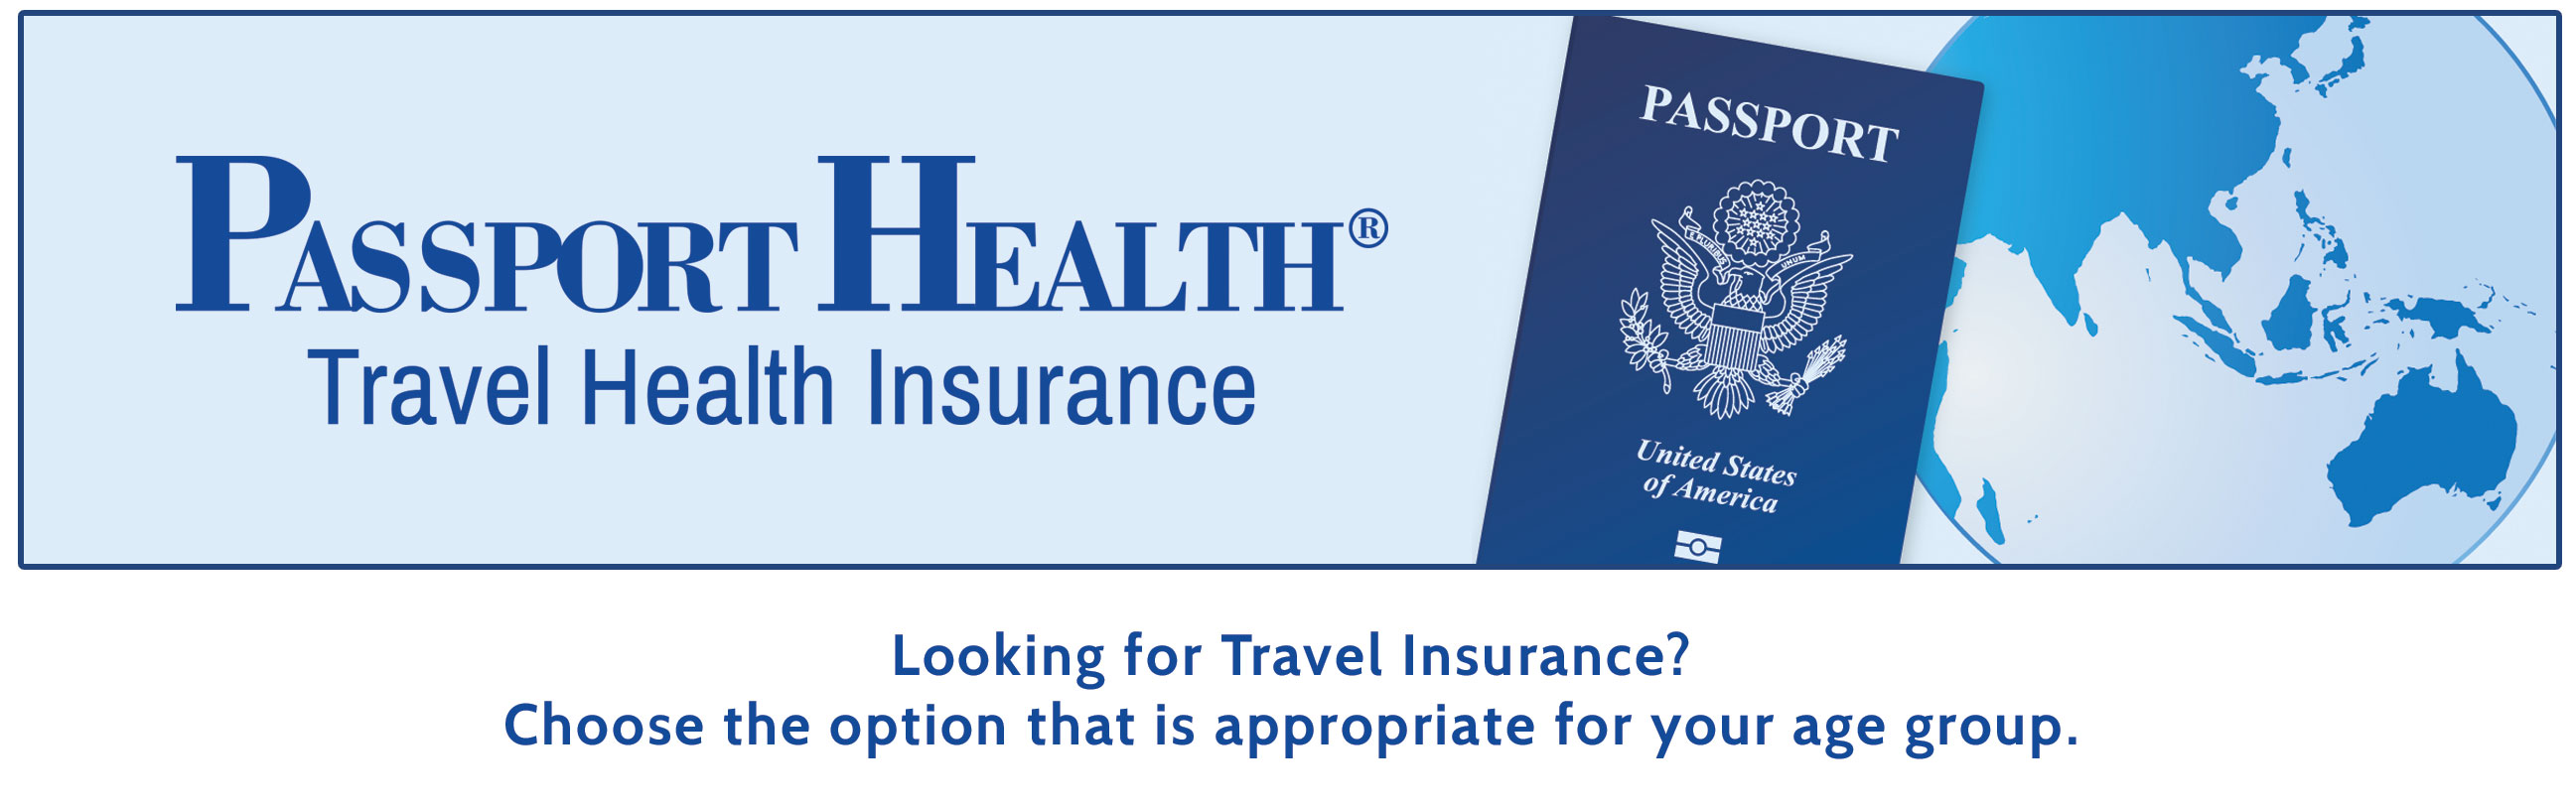 passport health insurance